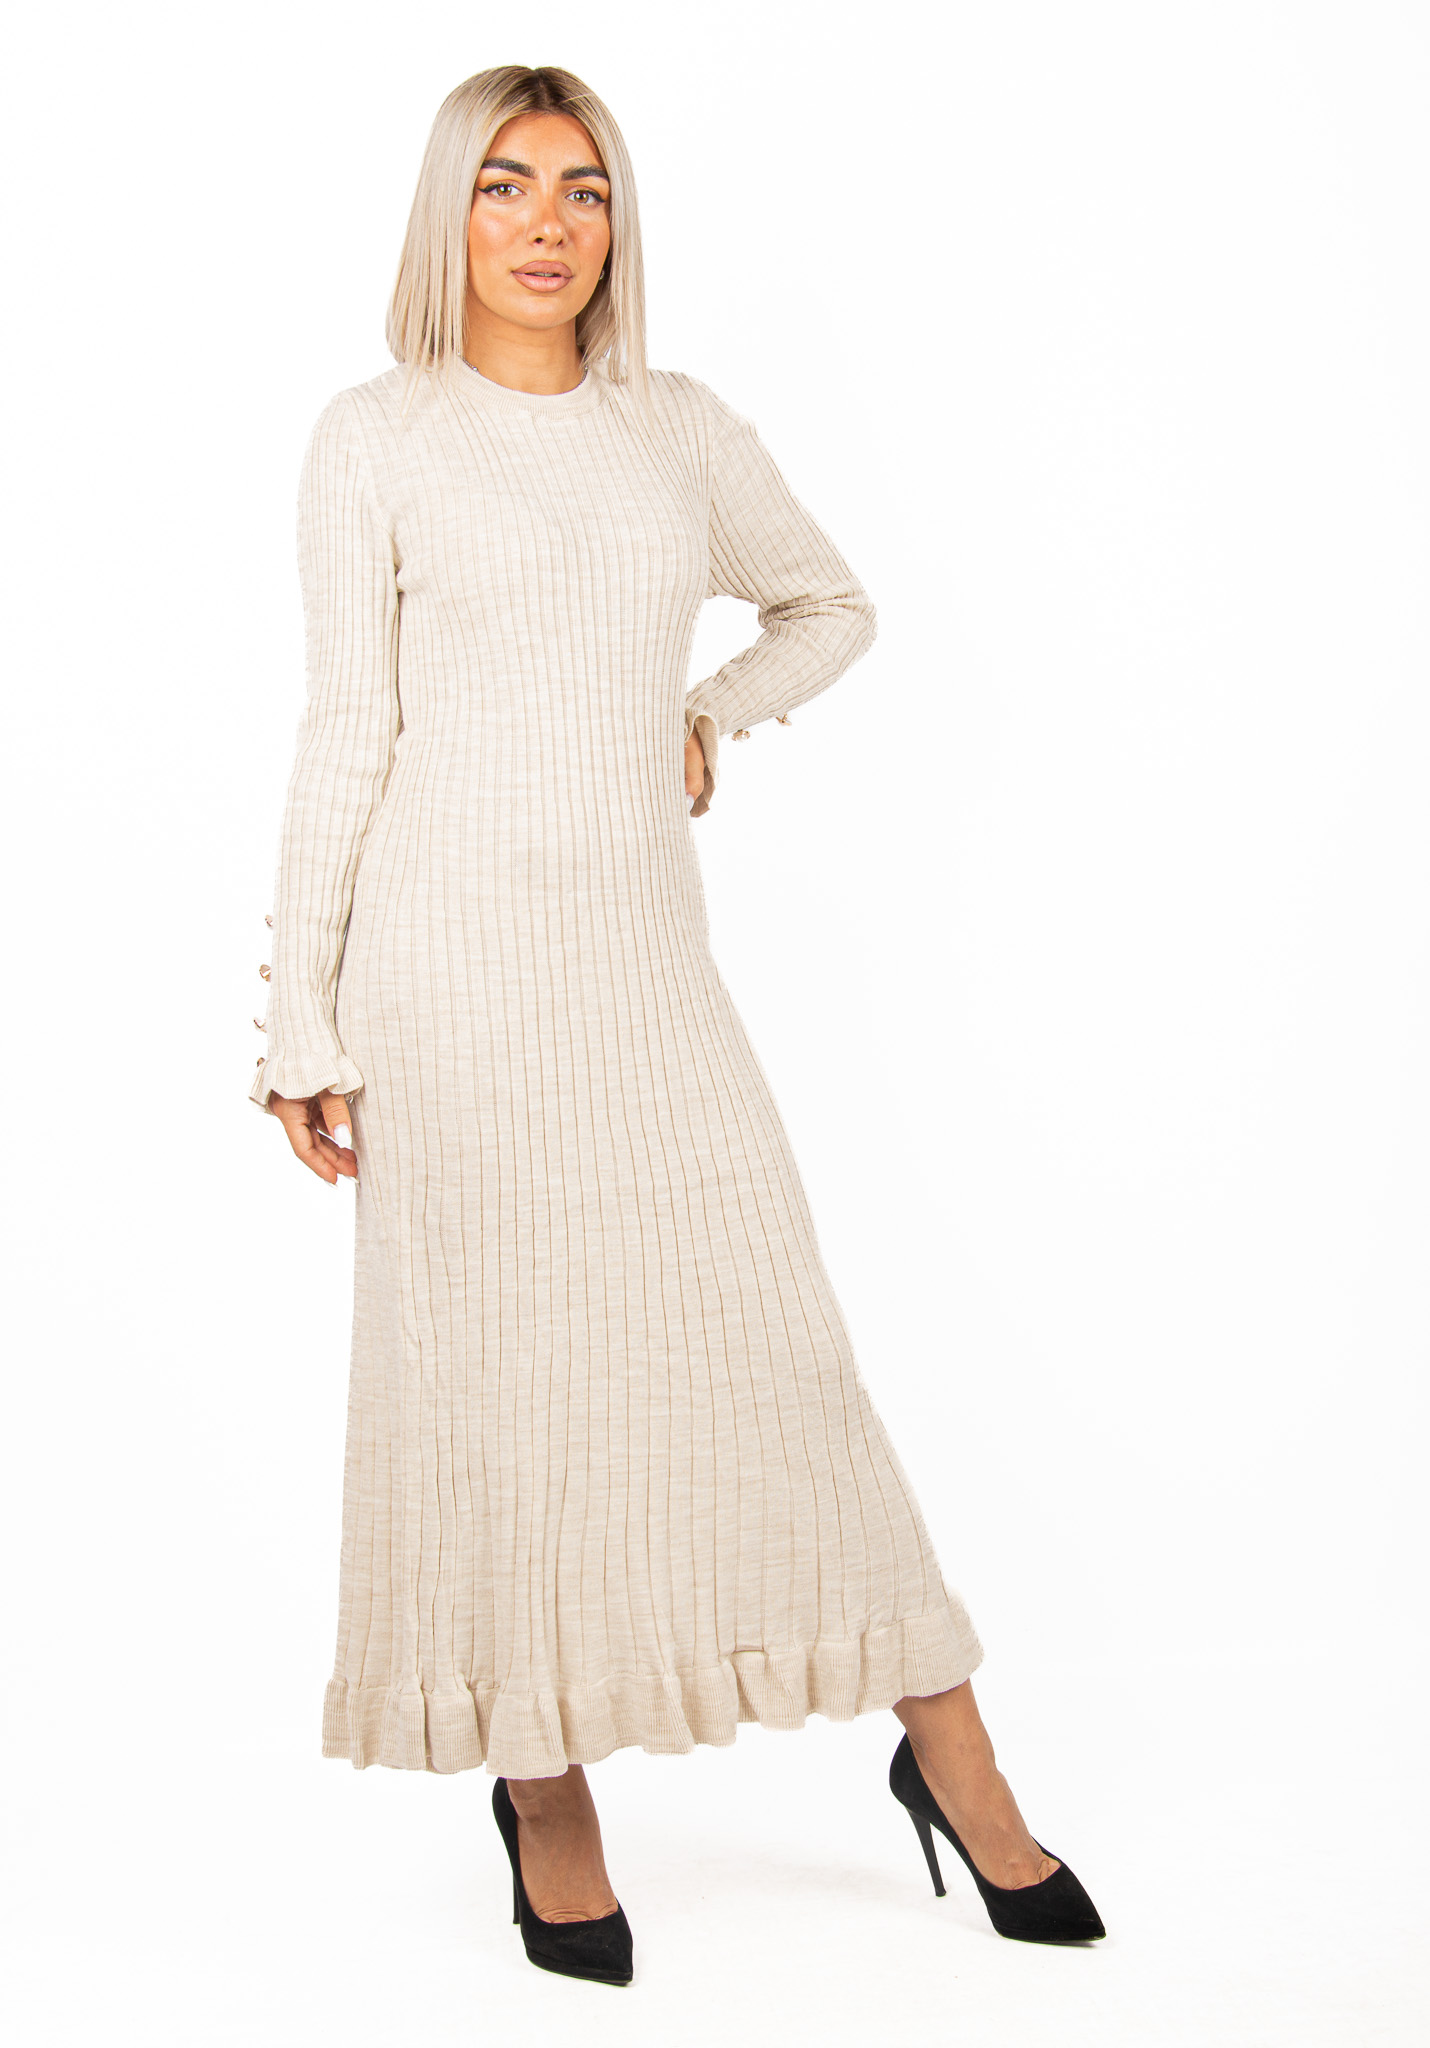 Φόρεμα Ριπ με Βολάν Μπεζ | EllenBoutique